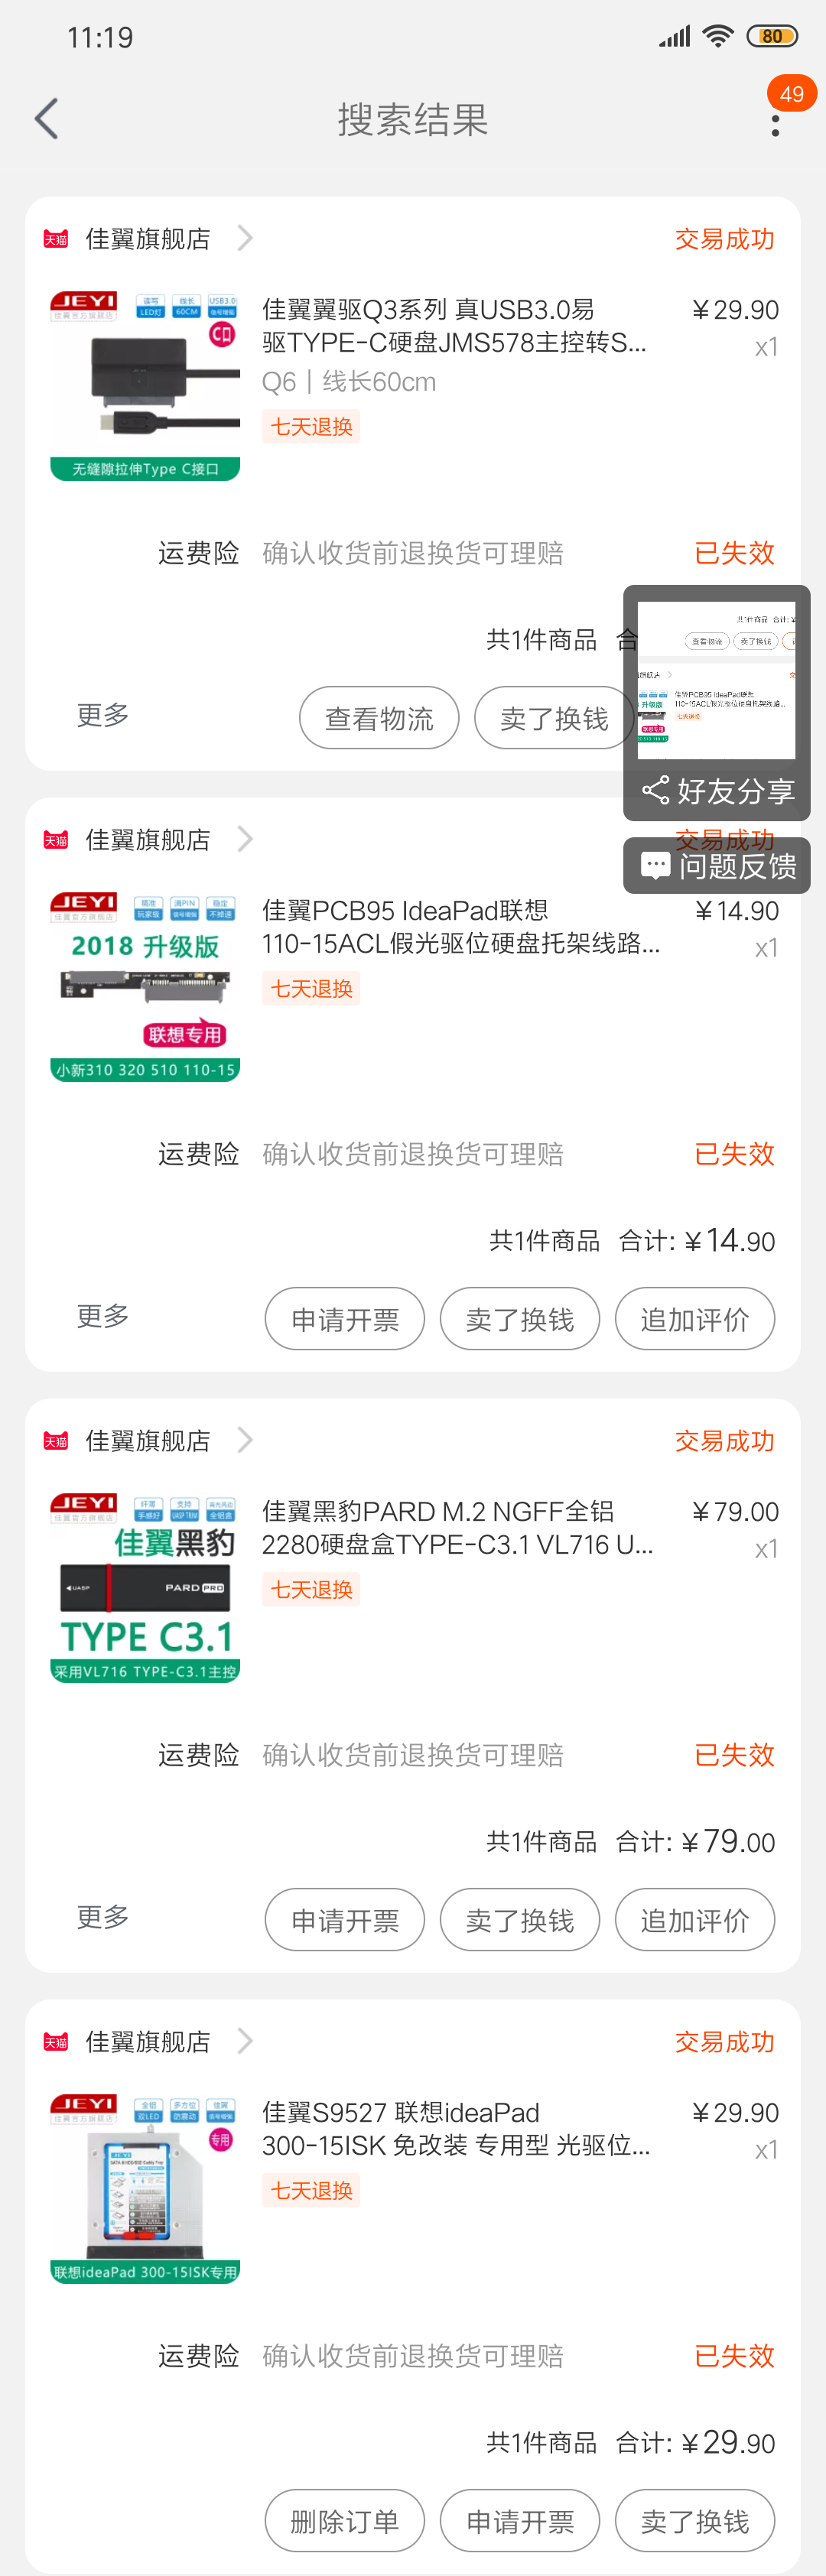 Screenshot_2019-07-03-11-19-21-789_com.taobao.tao.png